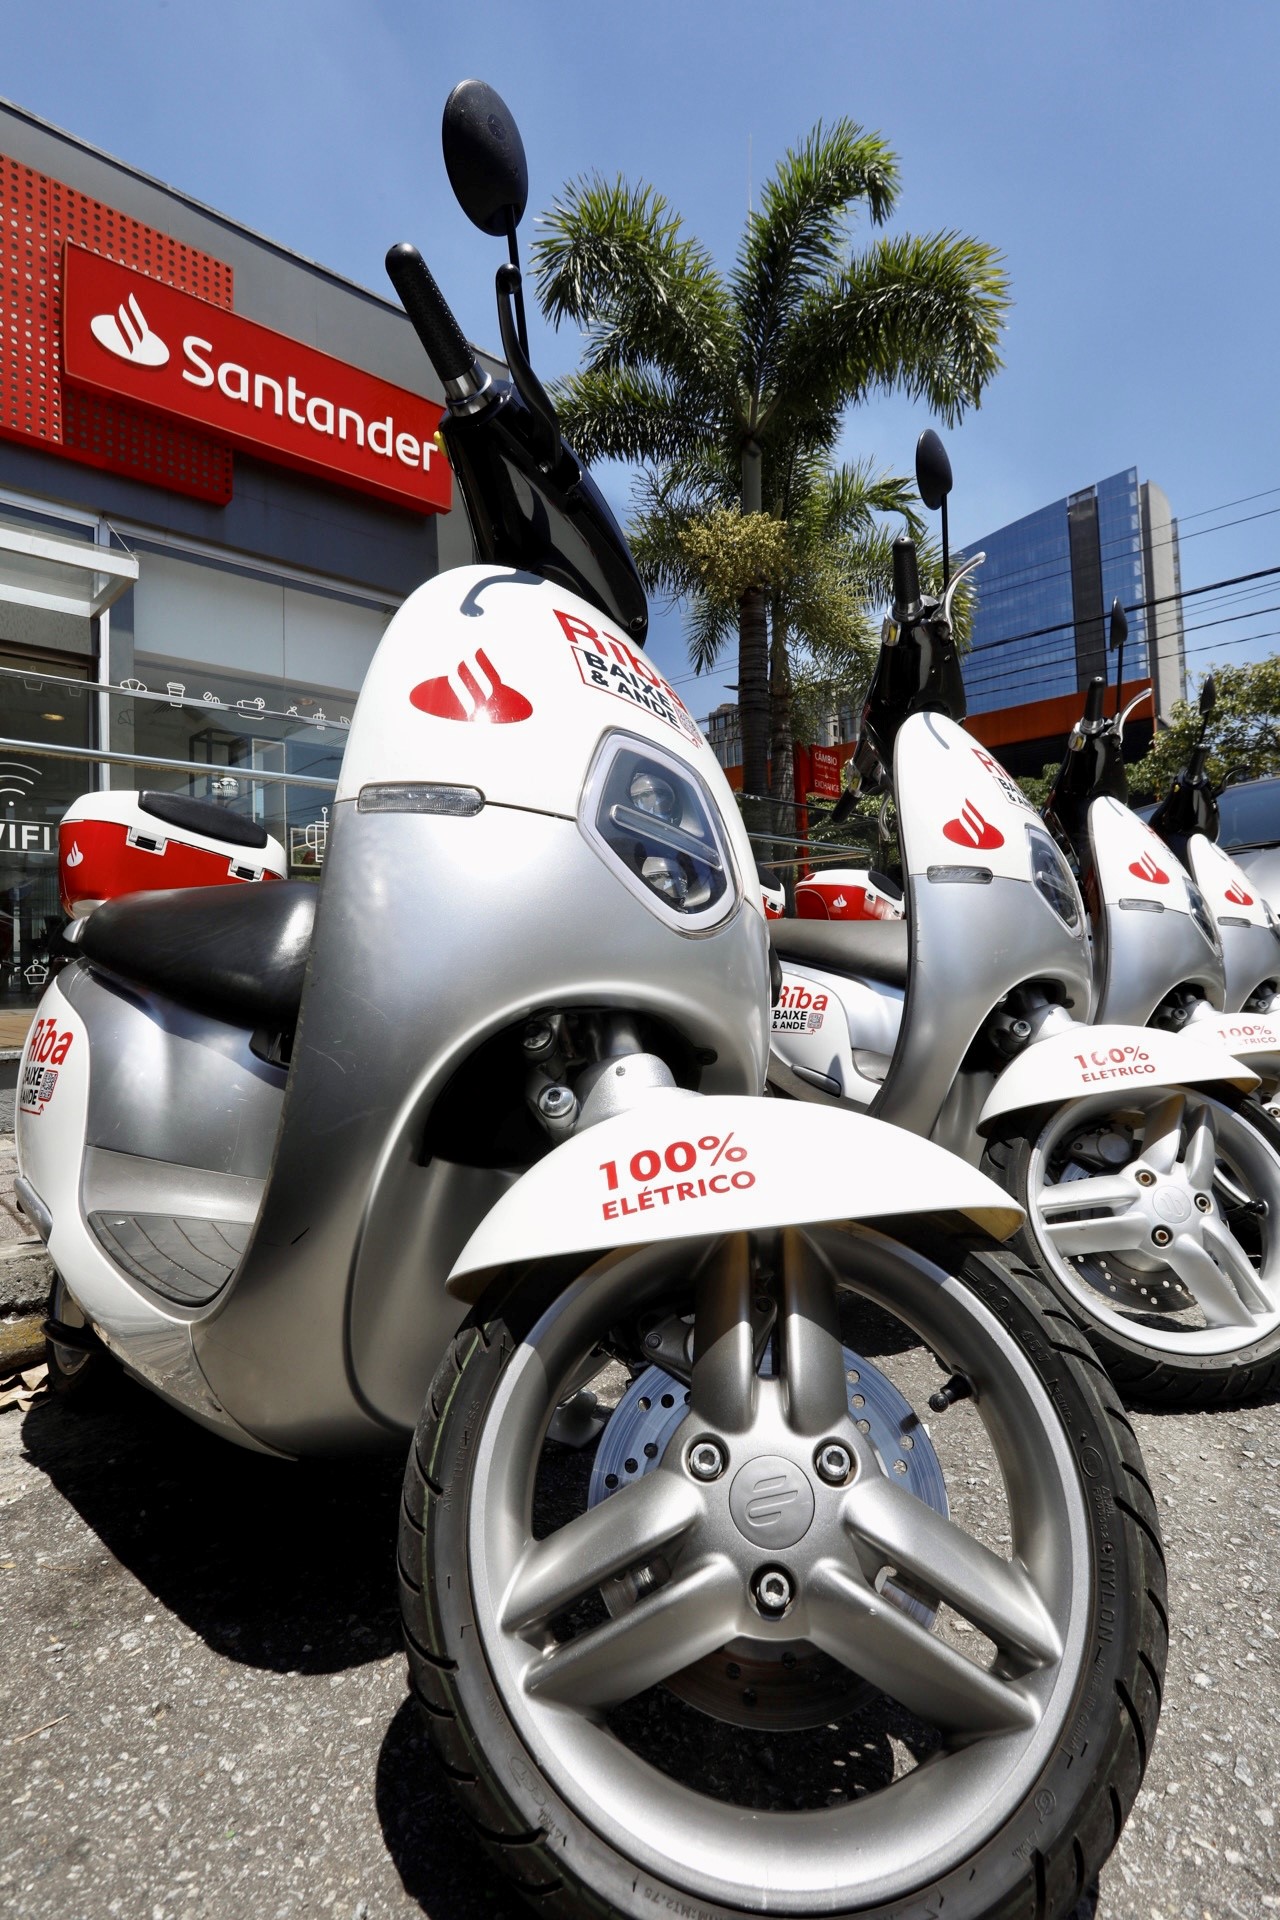 “Princípios de Sustentabilidade”: Santander patrocina compartilhamento de motos elétricas